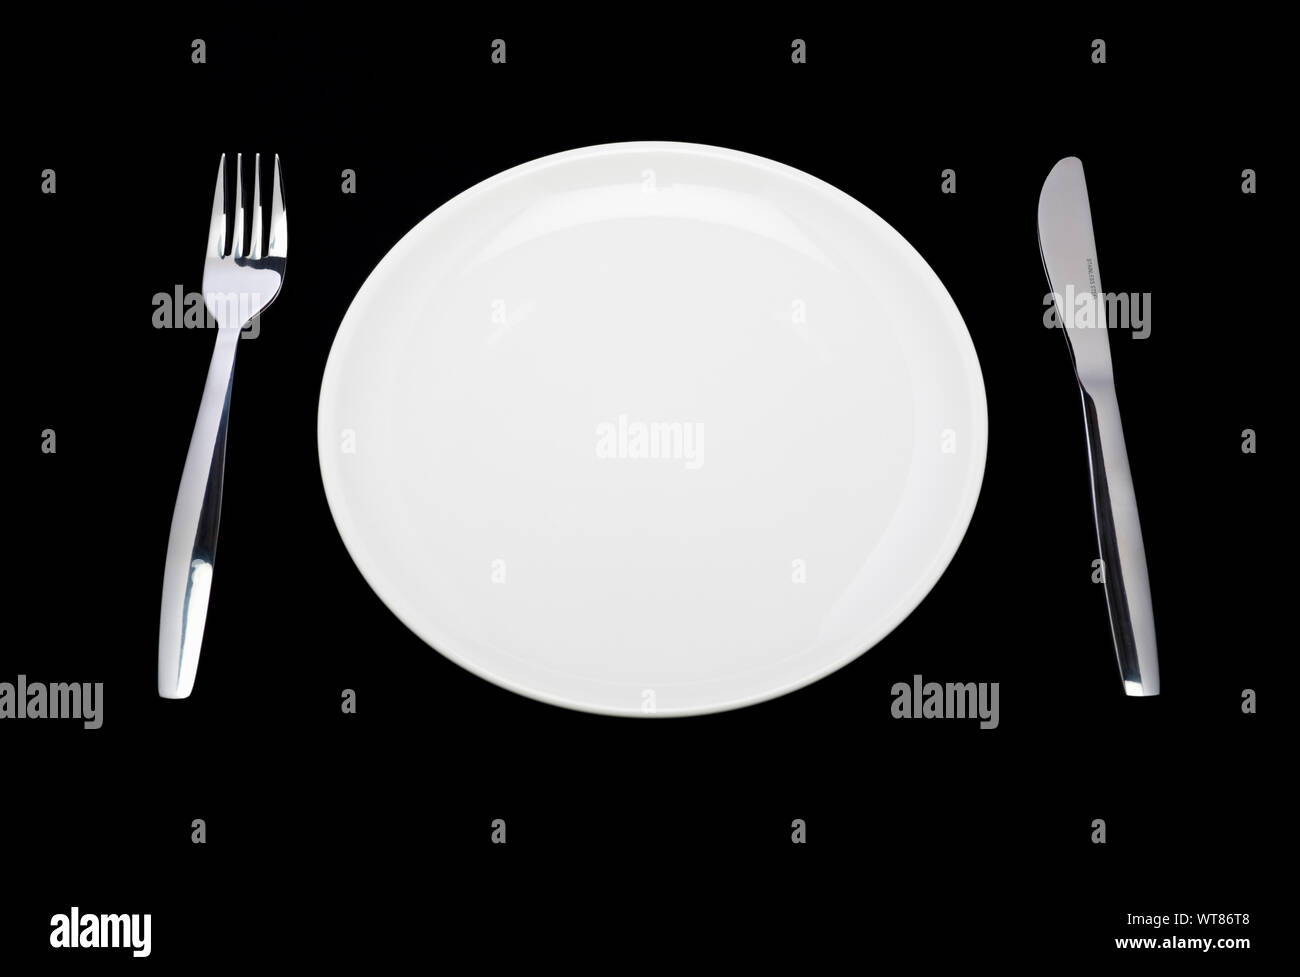 Couvert, assiette blanche, couteau et fourchette sur un fond noir Banque D'Images